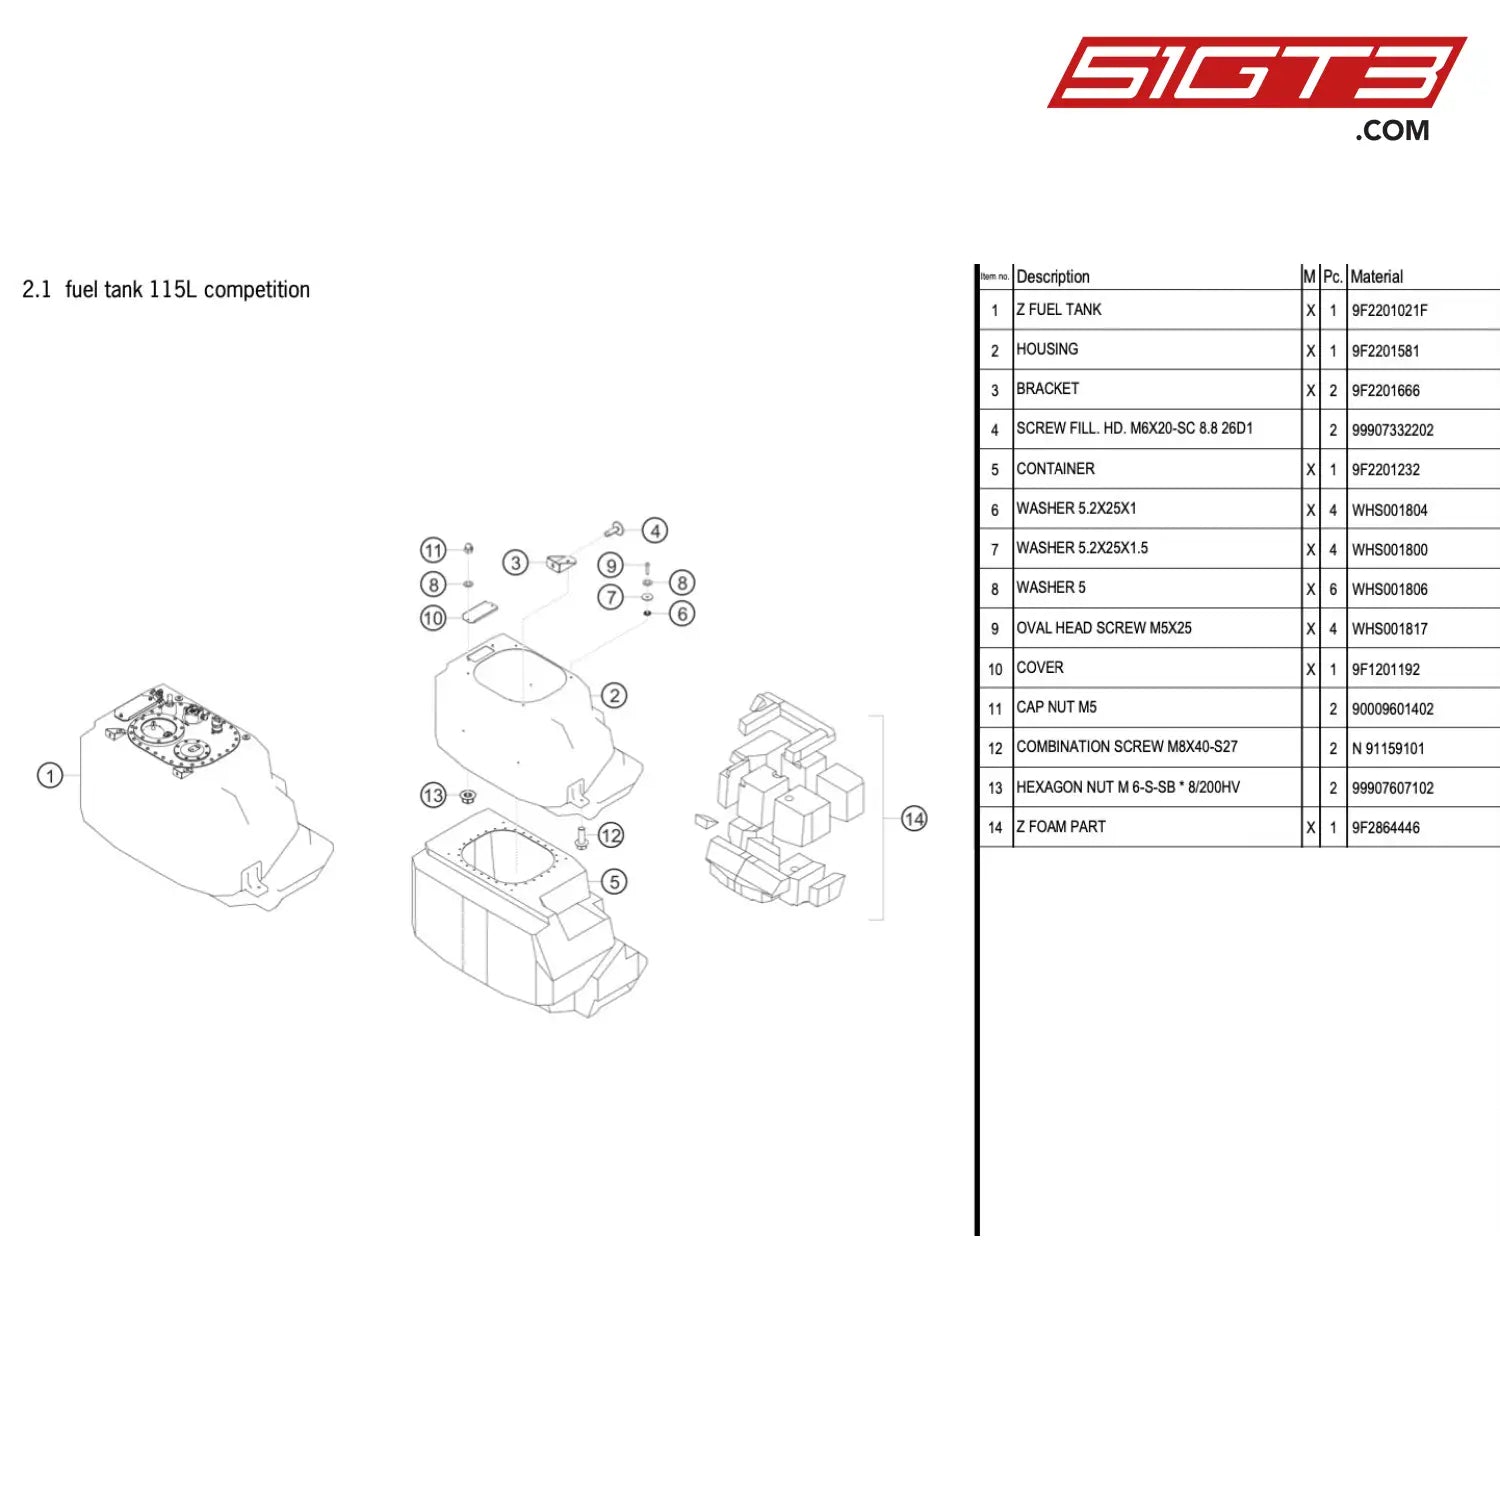 Hexagon Nut M 6-S-Sb * 8/200Hv - 99907607102 [Porsche 718 Cayman Gt4 Rs Clubsport] Fuel Tank 115L